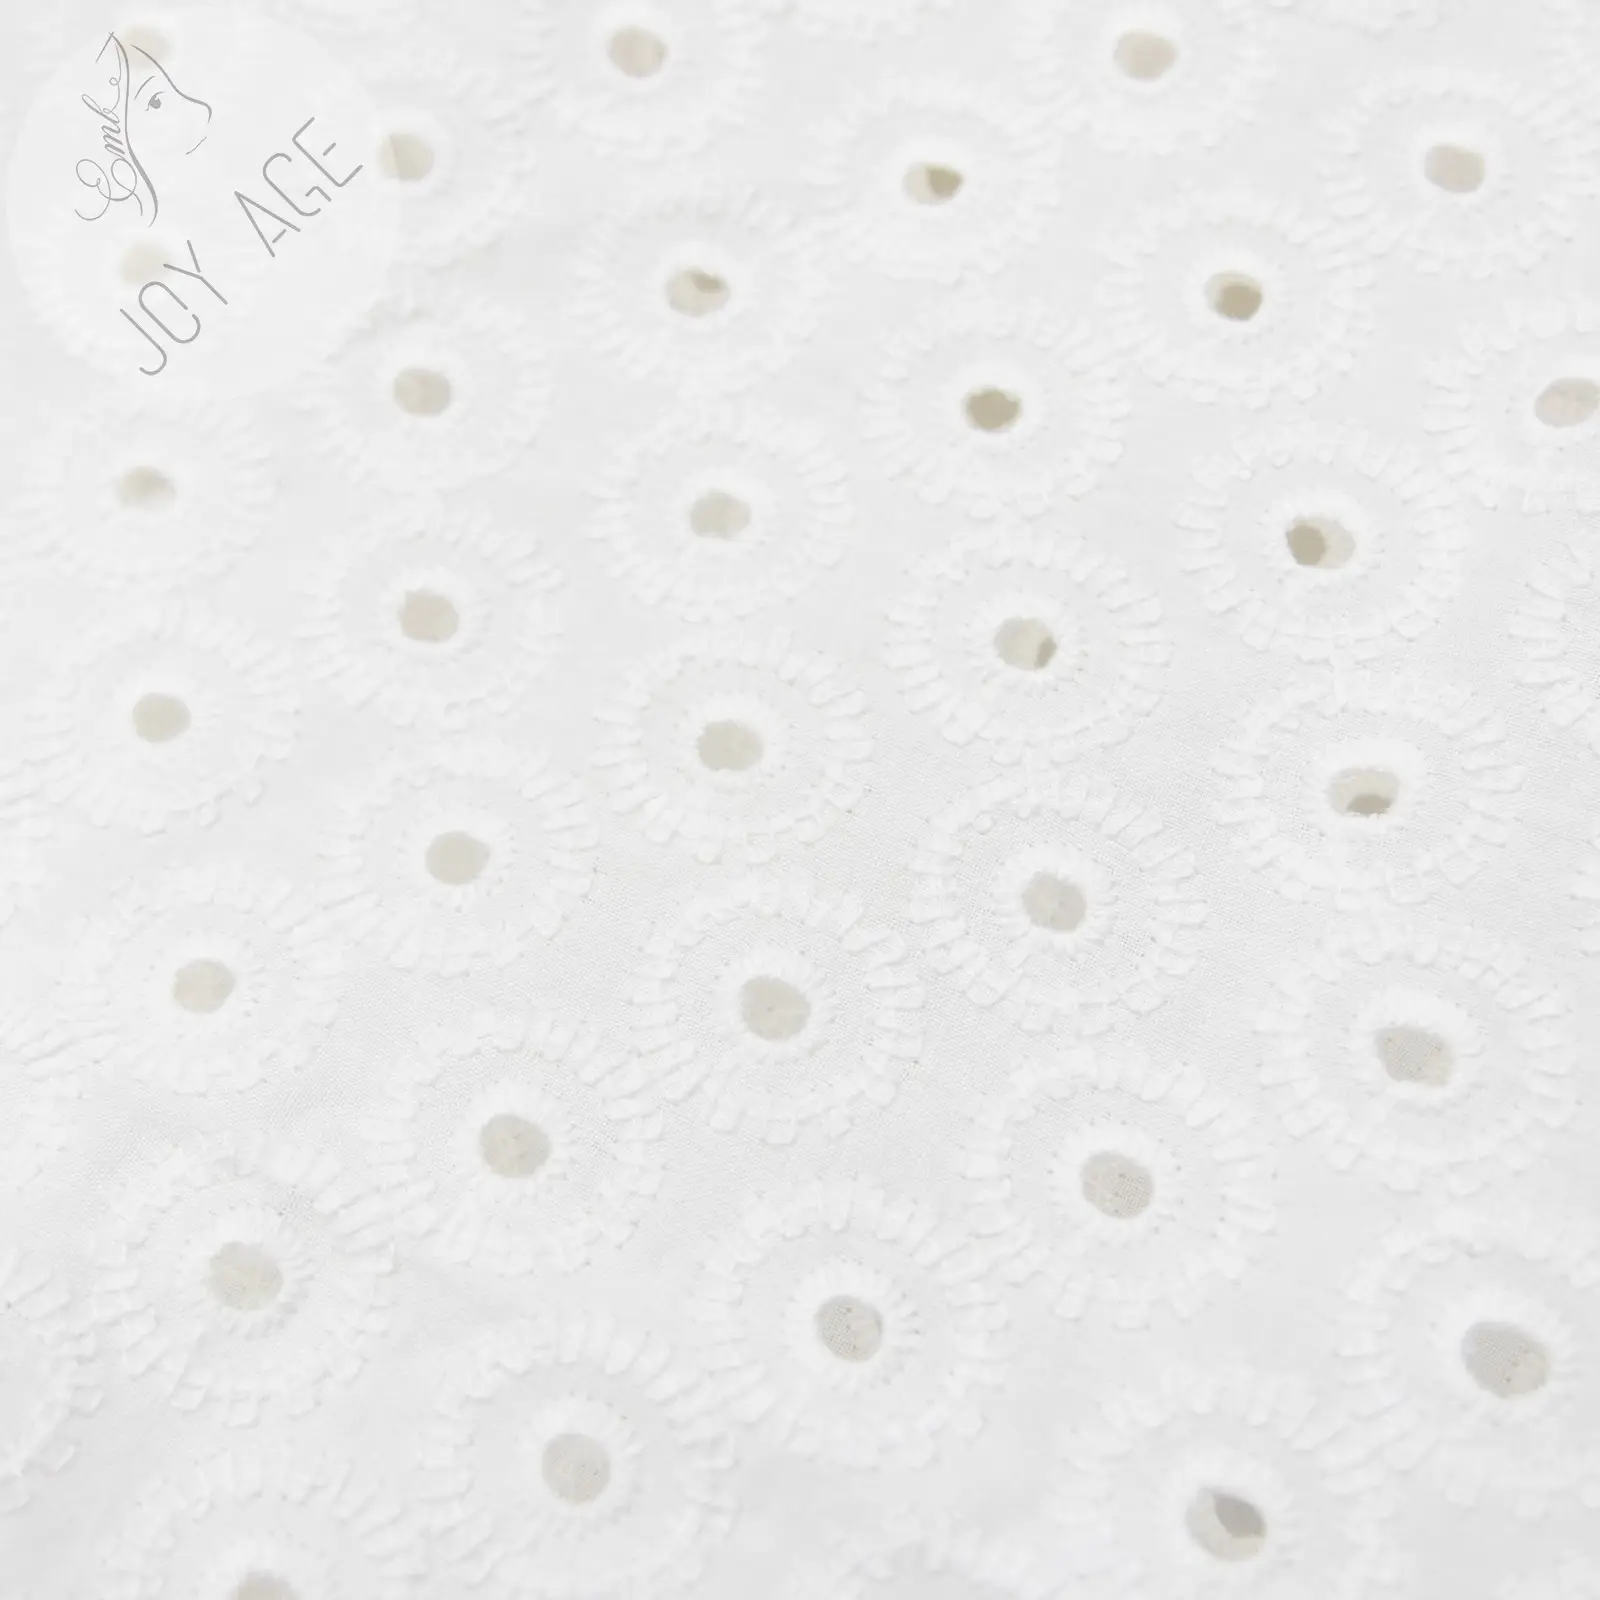 カラフルなリネンカジュアルドレスのためのイミテーションスタイル3Dホワイトコットンアイレット刺繍レース生地